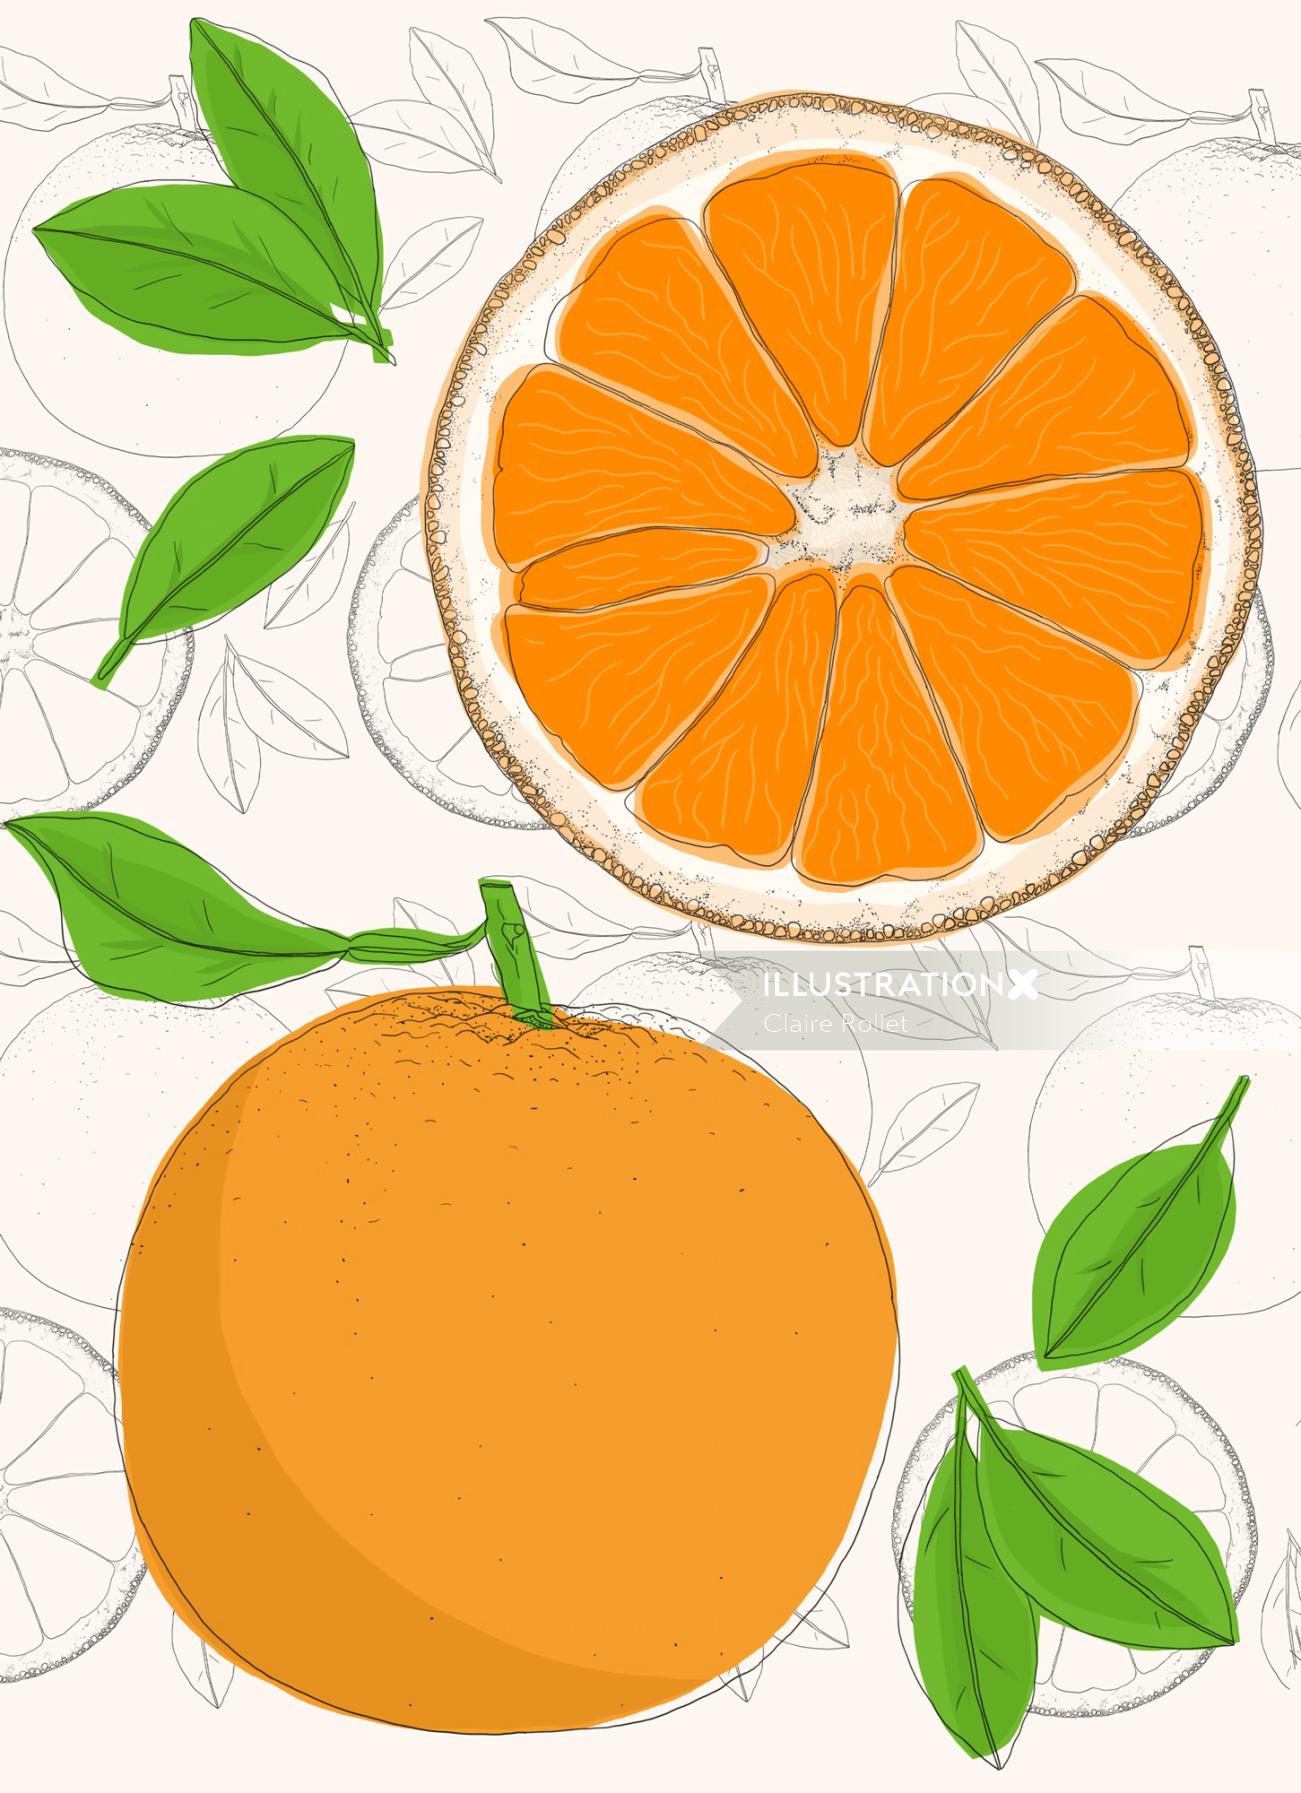 Illustrated anatomy of orange fruit